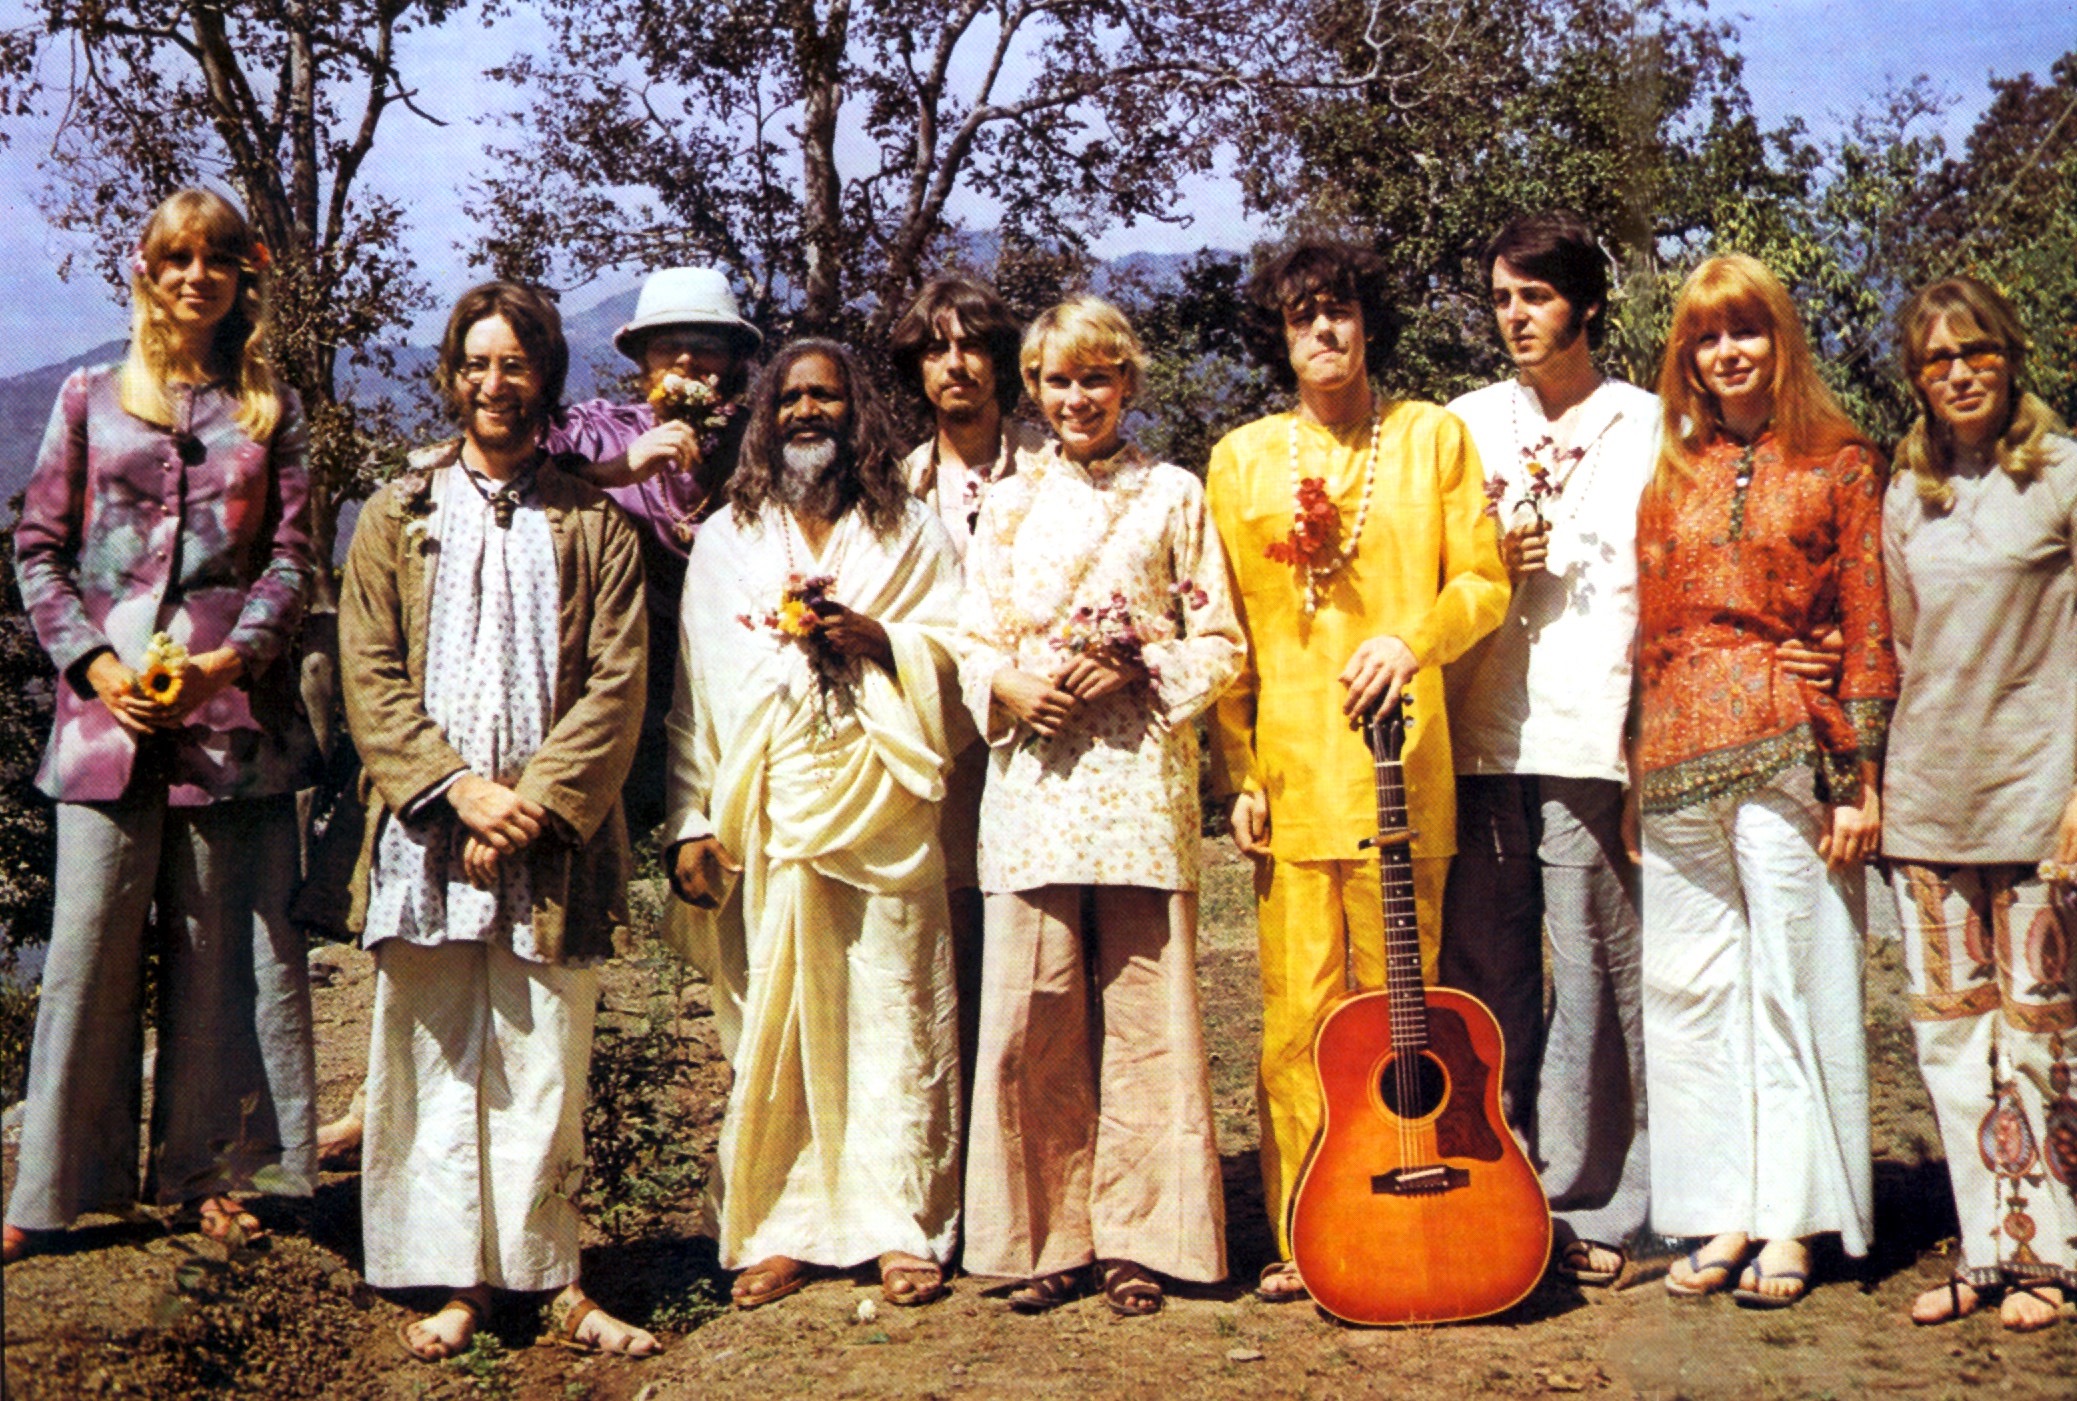 1968年3月，从左到右，Patti Boyd、John Lennon、Mike Love（海滩男孩），Mahareshi Mahesh Yogi，George Harrison，Mia Farrow，John Farrow（导演），Donovan，Paul McCartney，Jane Asher（演员），Cynthia Lennon。